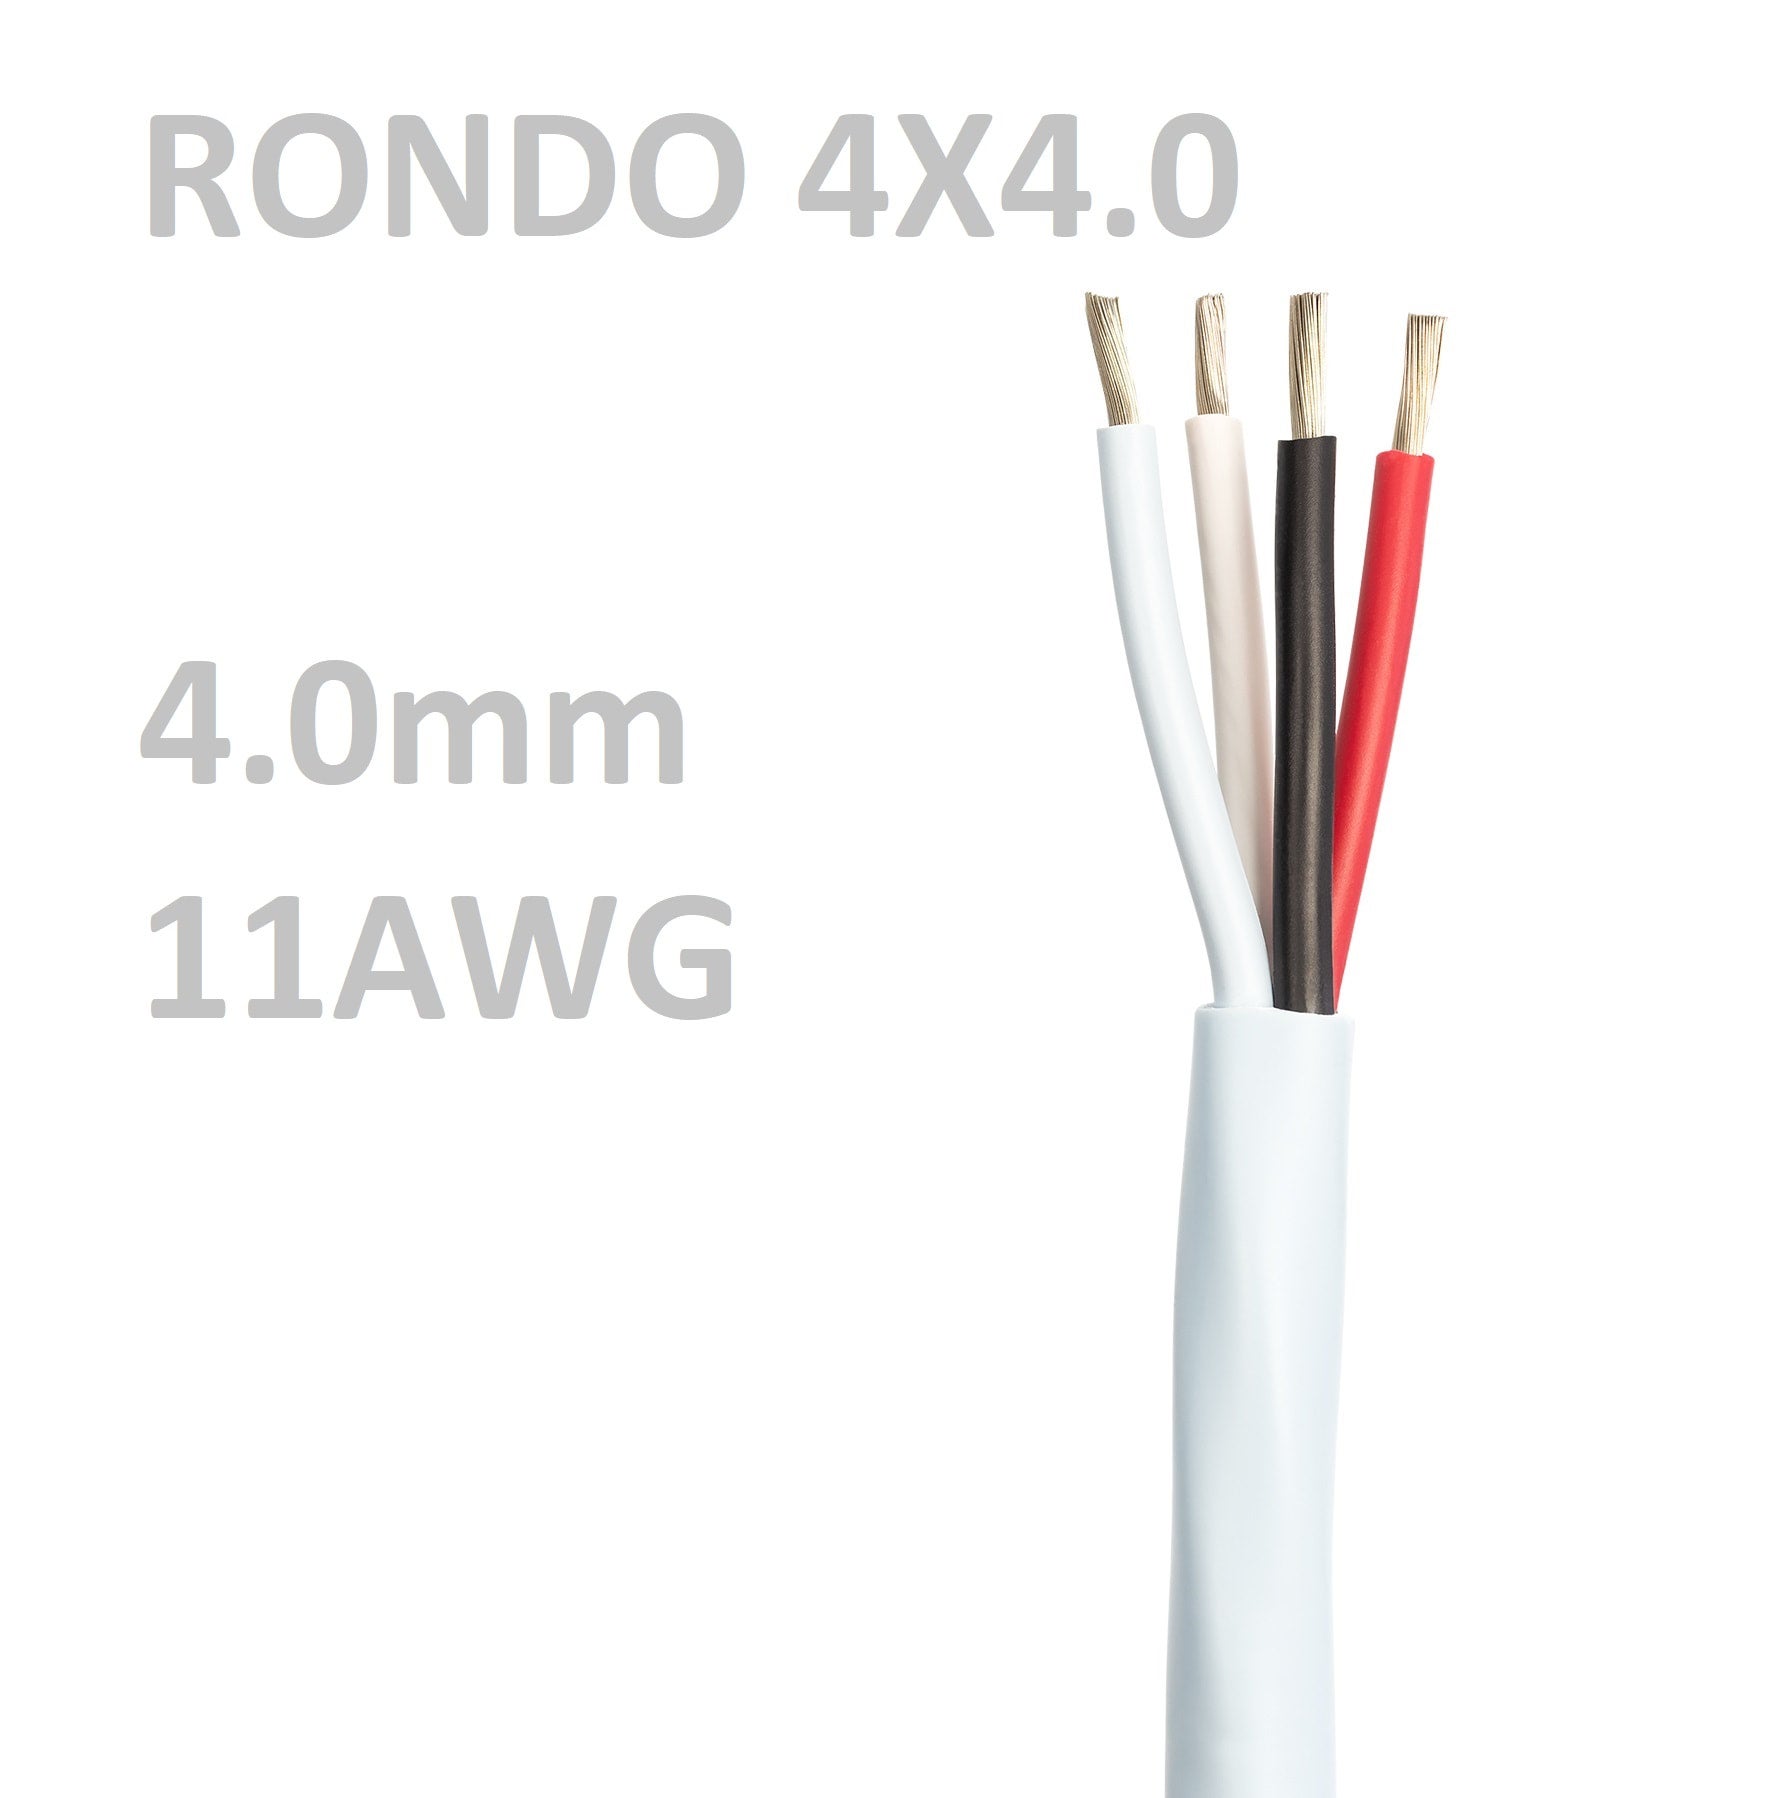 SUPRA RONDO 4x4.0 - スピーカー